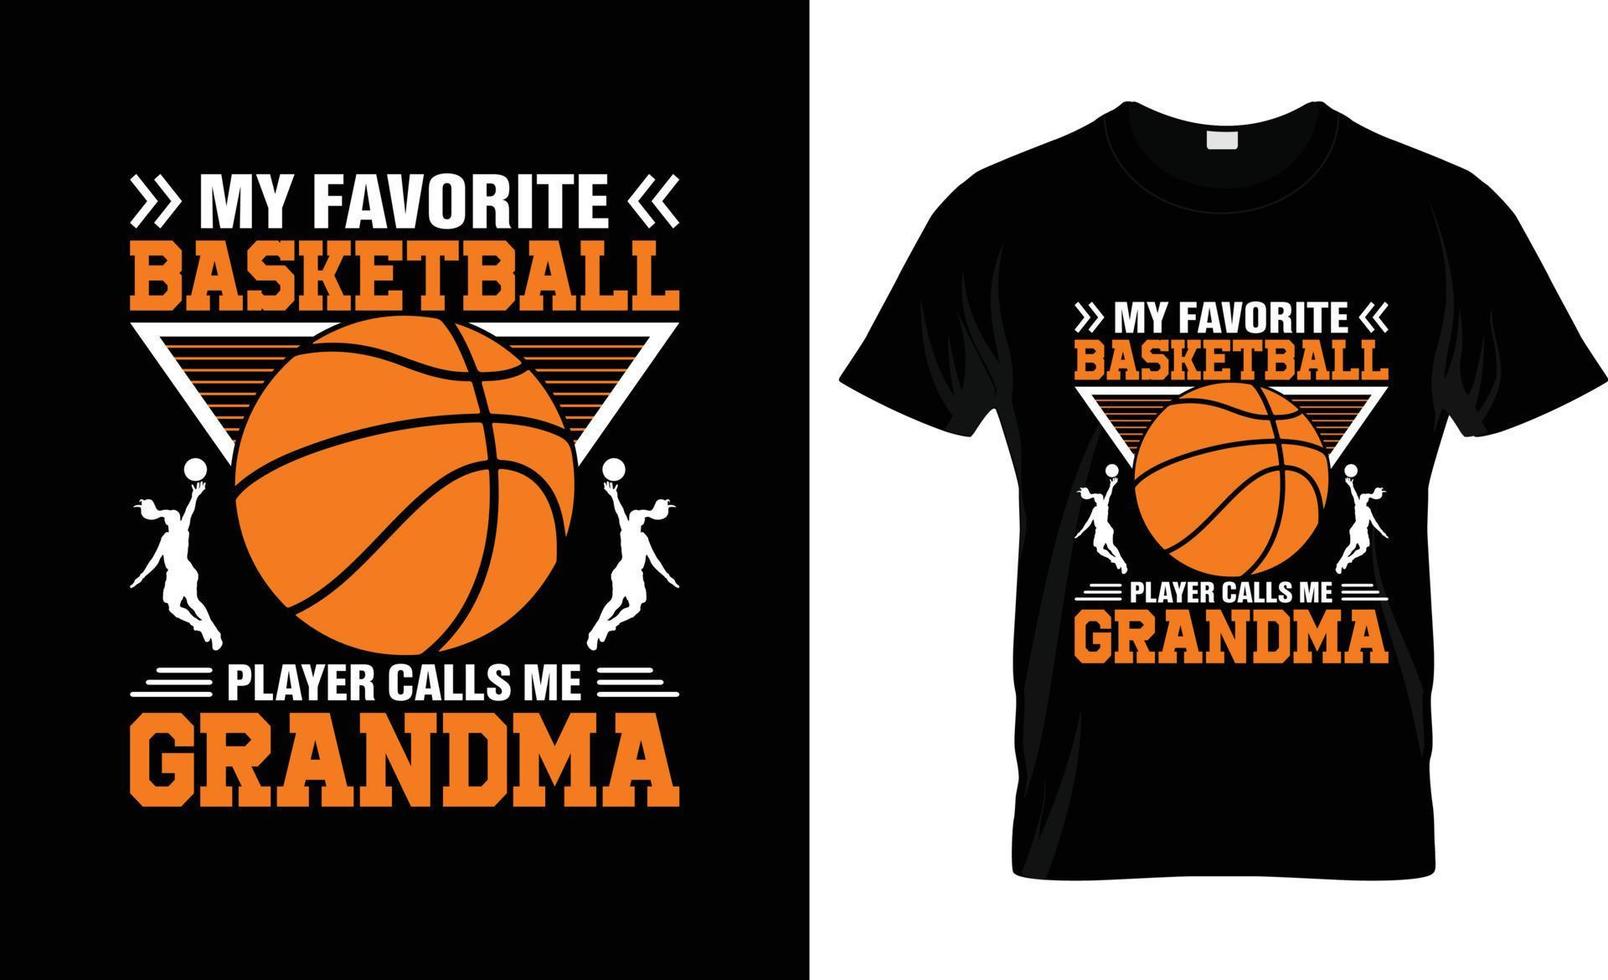 meu jogador de basquete favorito me chama de design de camiseta de basquete de vovó, slogan de camiseta de basquete e design de vestuário, tipografia de basquete, vetor de basquete, ilustração de basquete